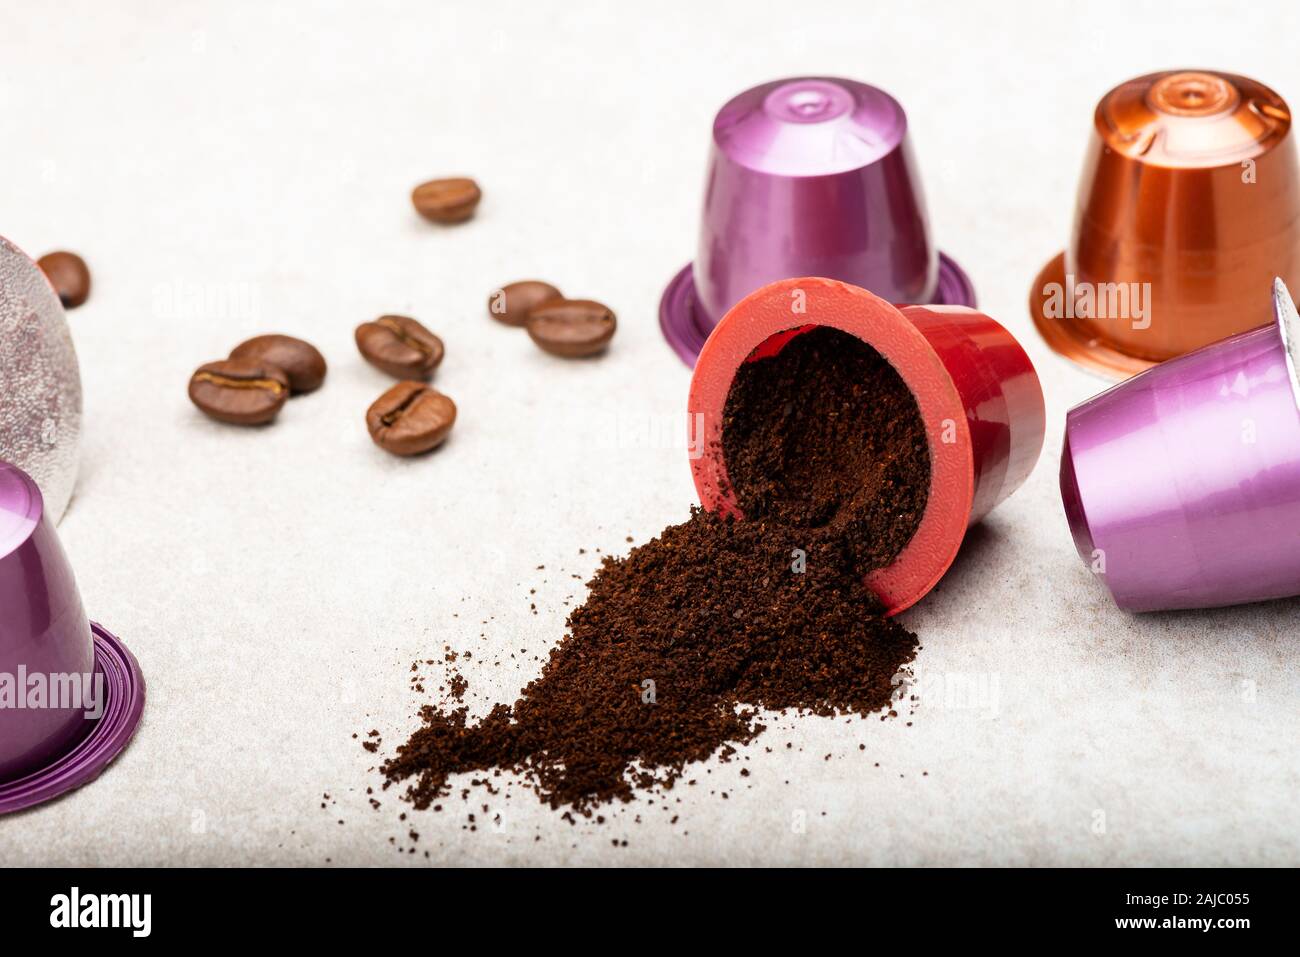 Öffnen Espresso Kaffee Kapseln oder Hülsen und Kaffeebohnen auf grauem Hintergrund, Ansicht von oben Stockfoto